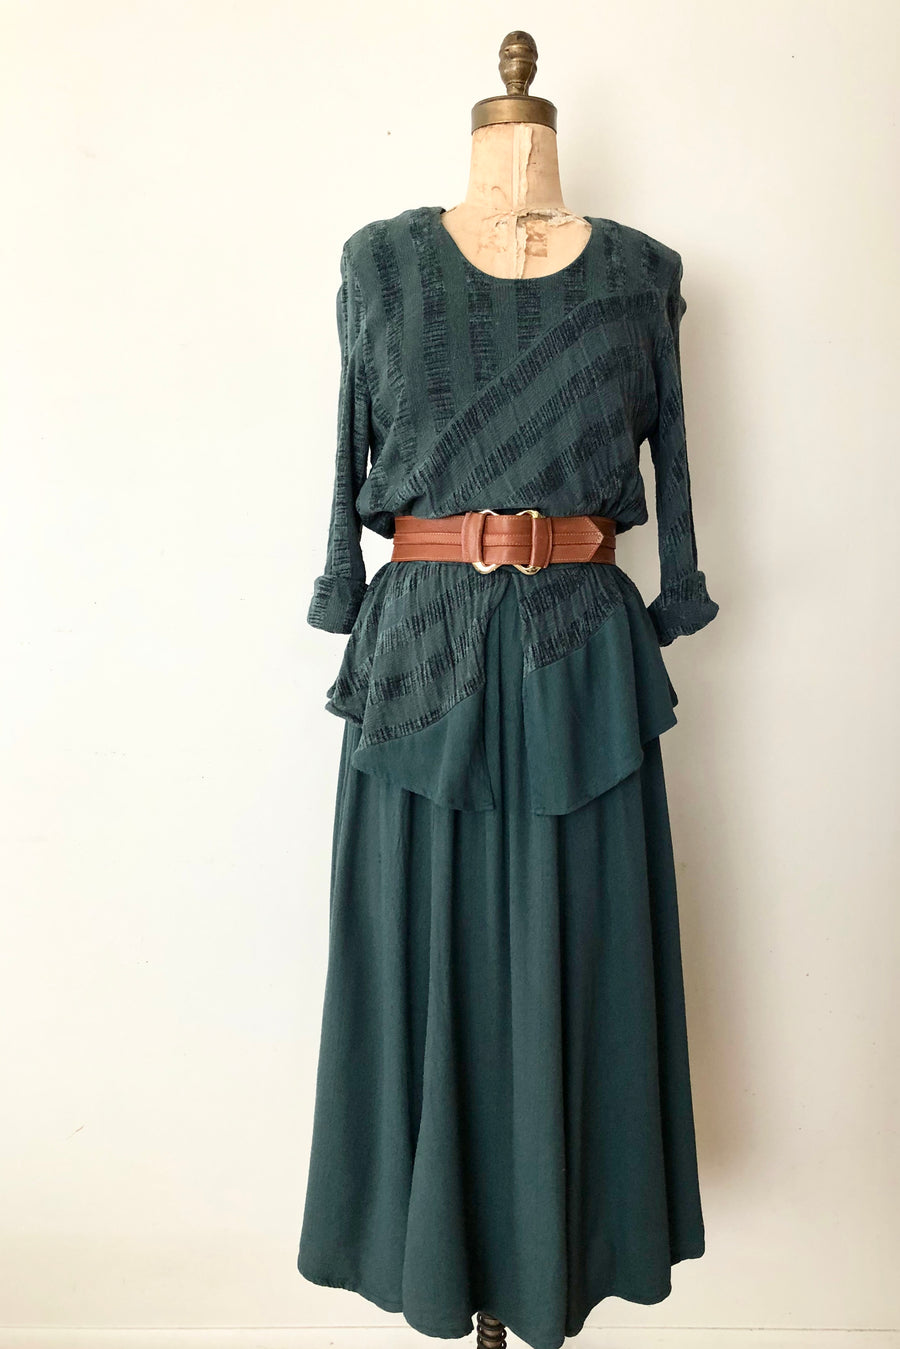 ON HOLD - 80's Green Peplum Rayon Dress - Size M